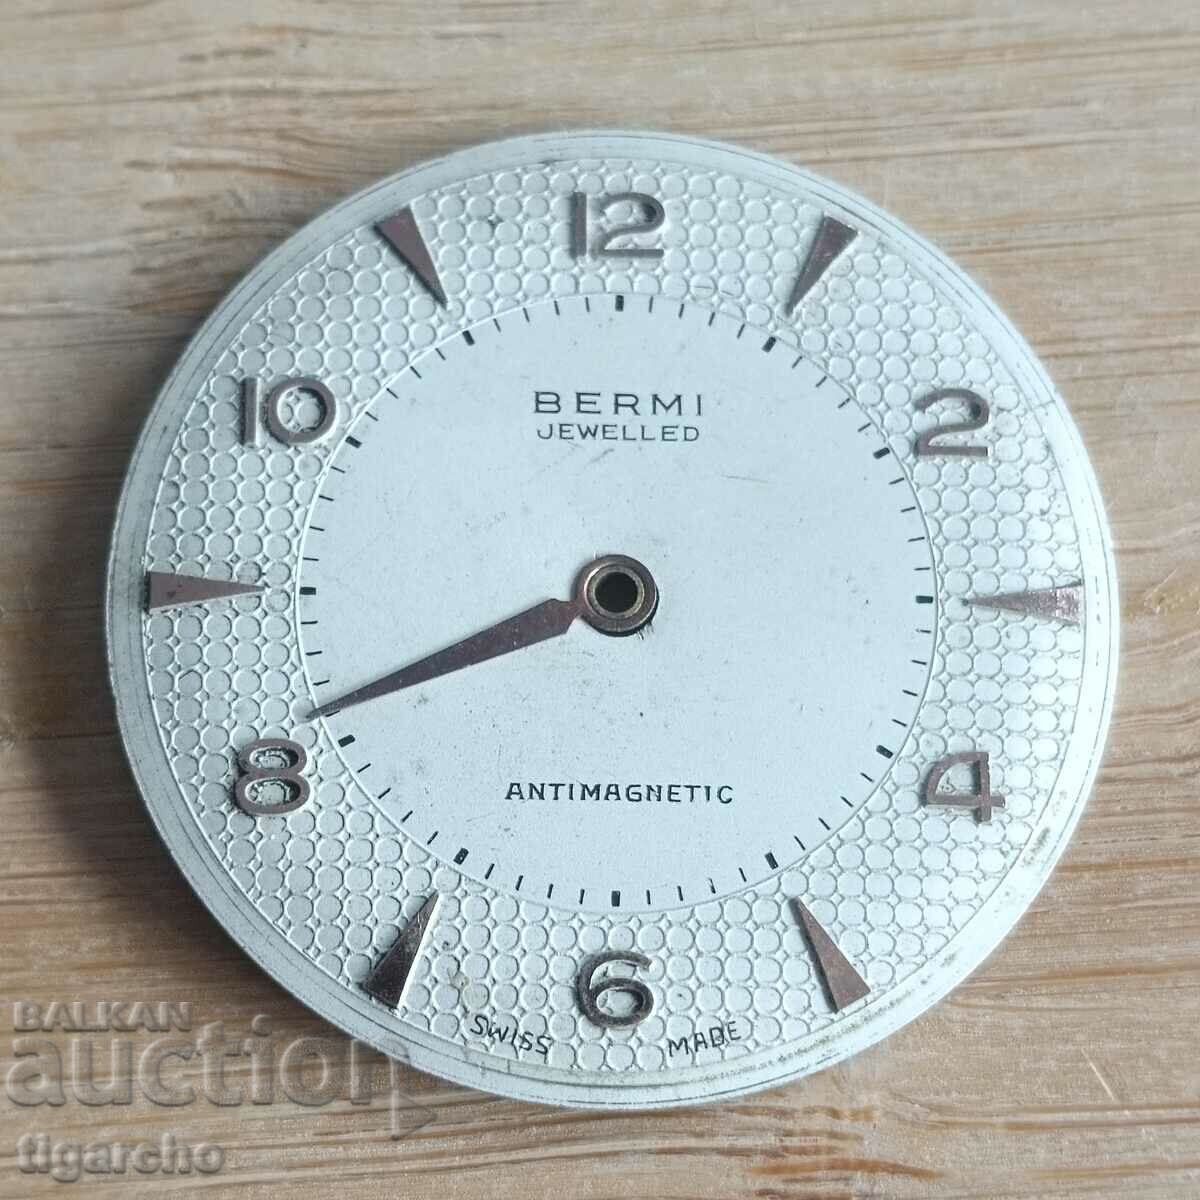 BERMI watch face